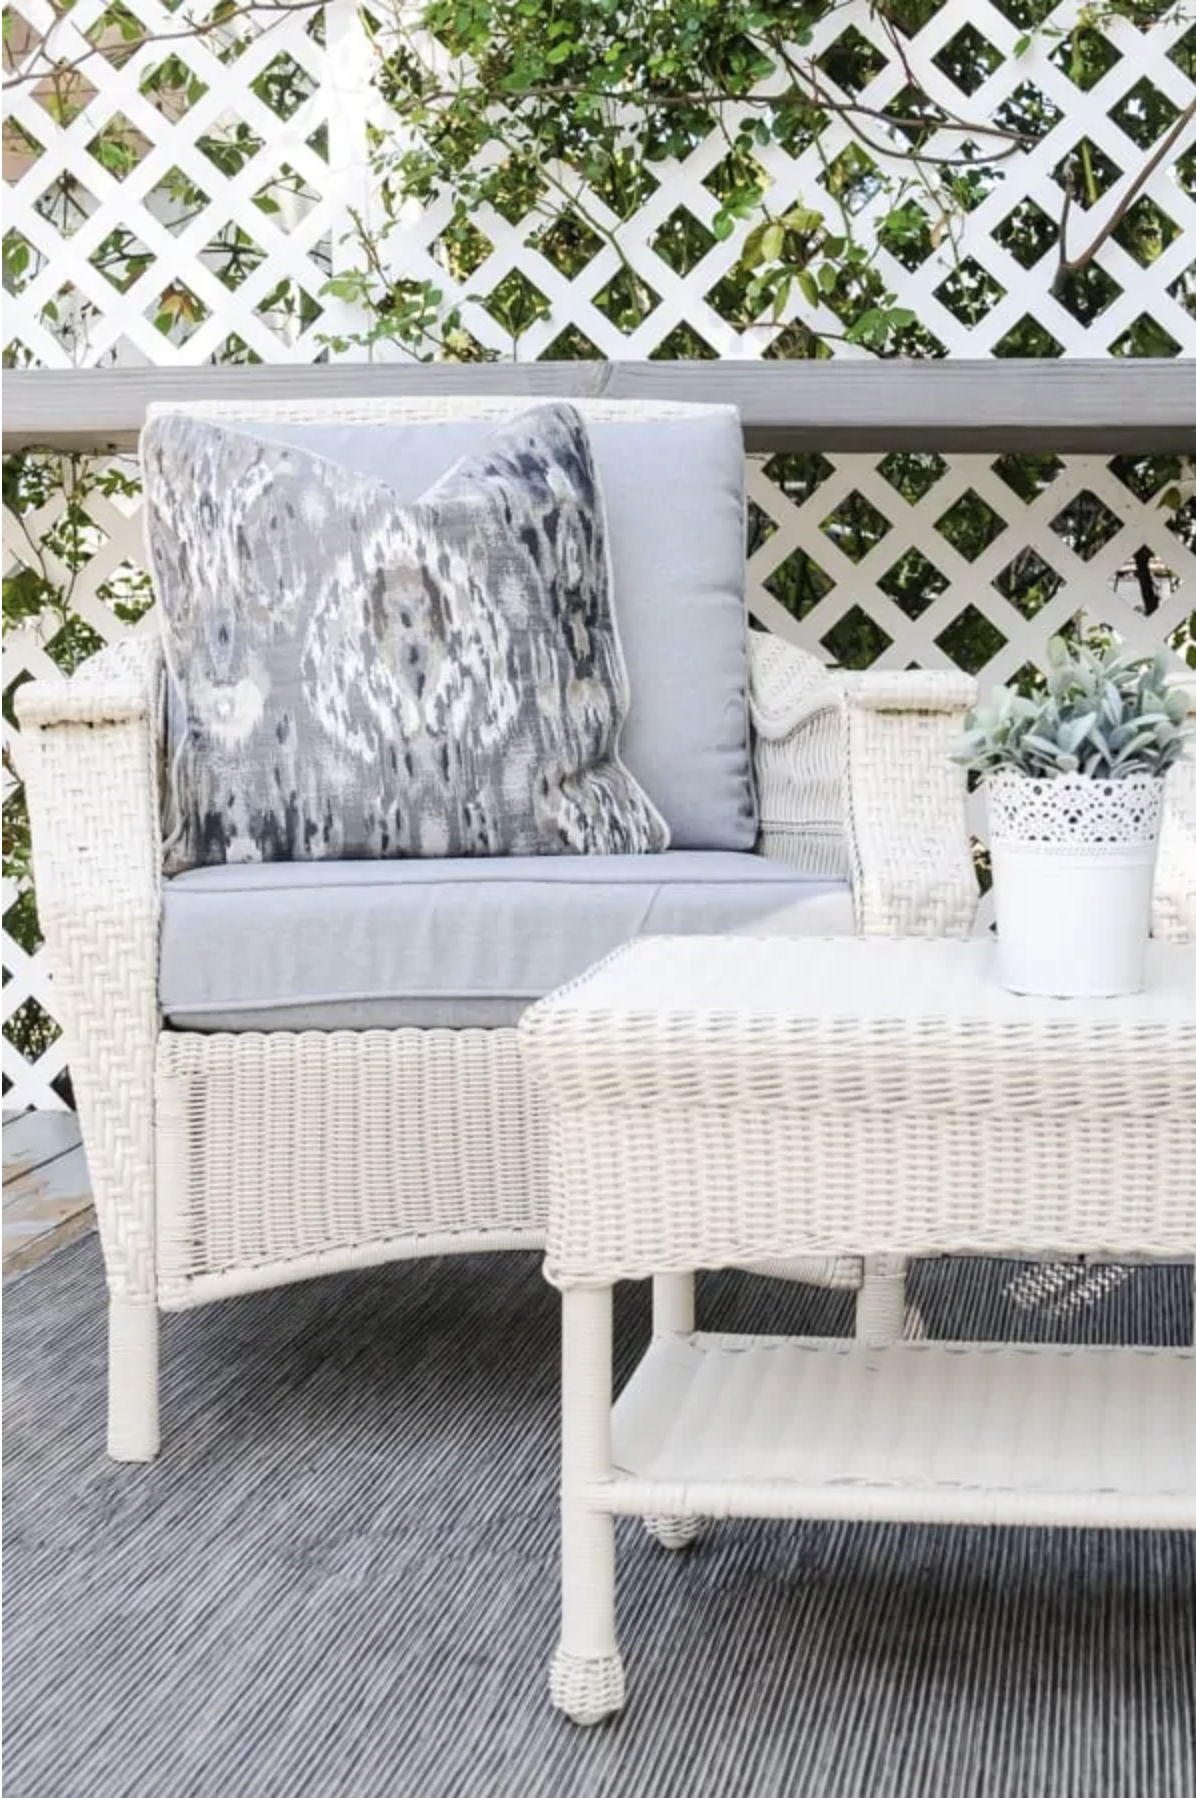 White patio furniture